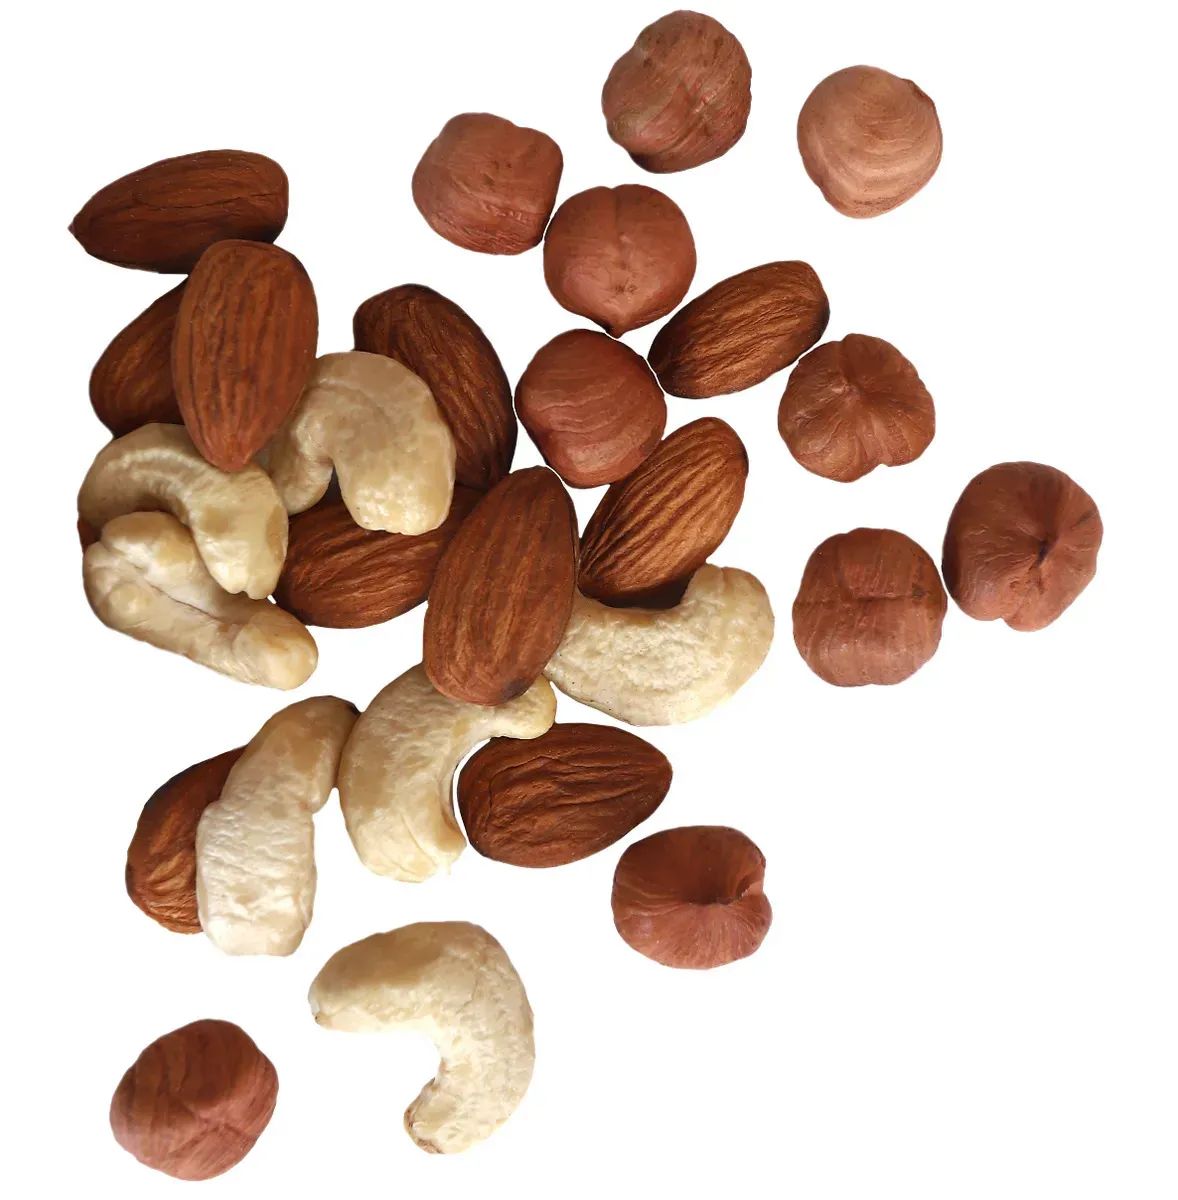 Ореховая смесь жареная Nuts24 1 кг Высший сорт - купить в SR Market, цена на Мегамаркет